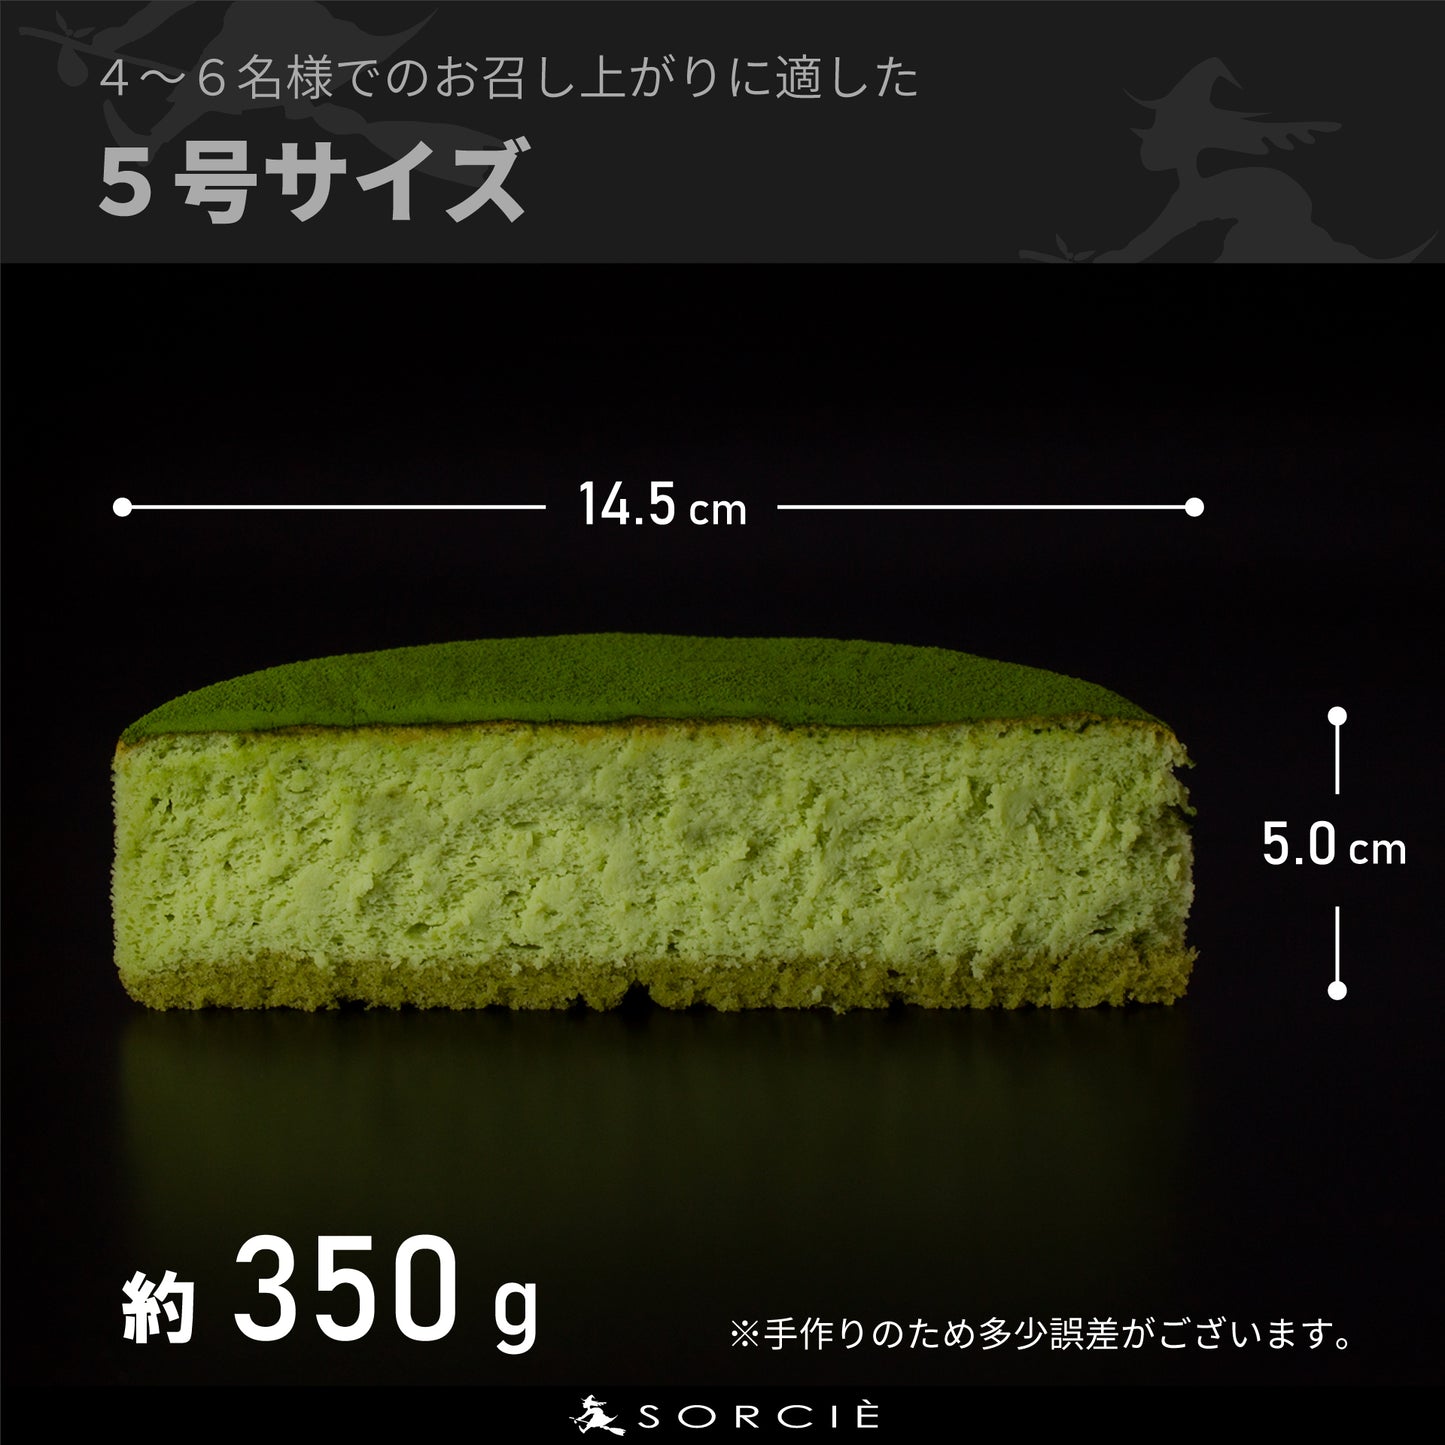 【宅配】抹茶スフレ チーズケーキ 5号 直径14.5cm 4～6人分 約350g